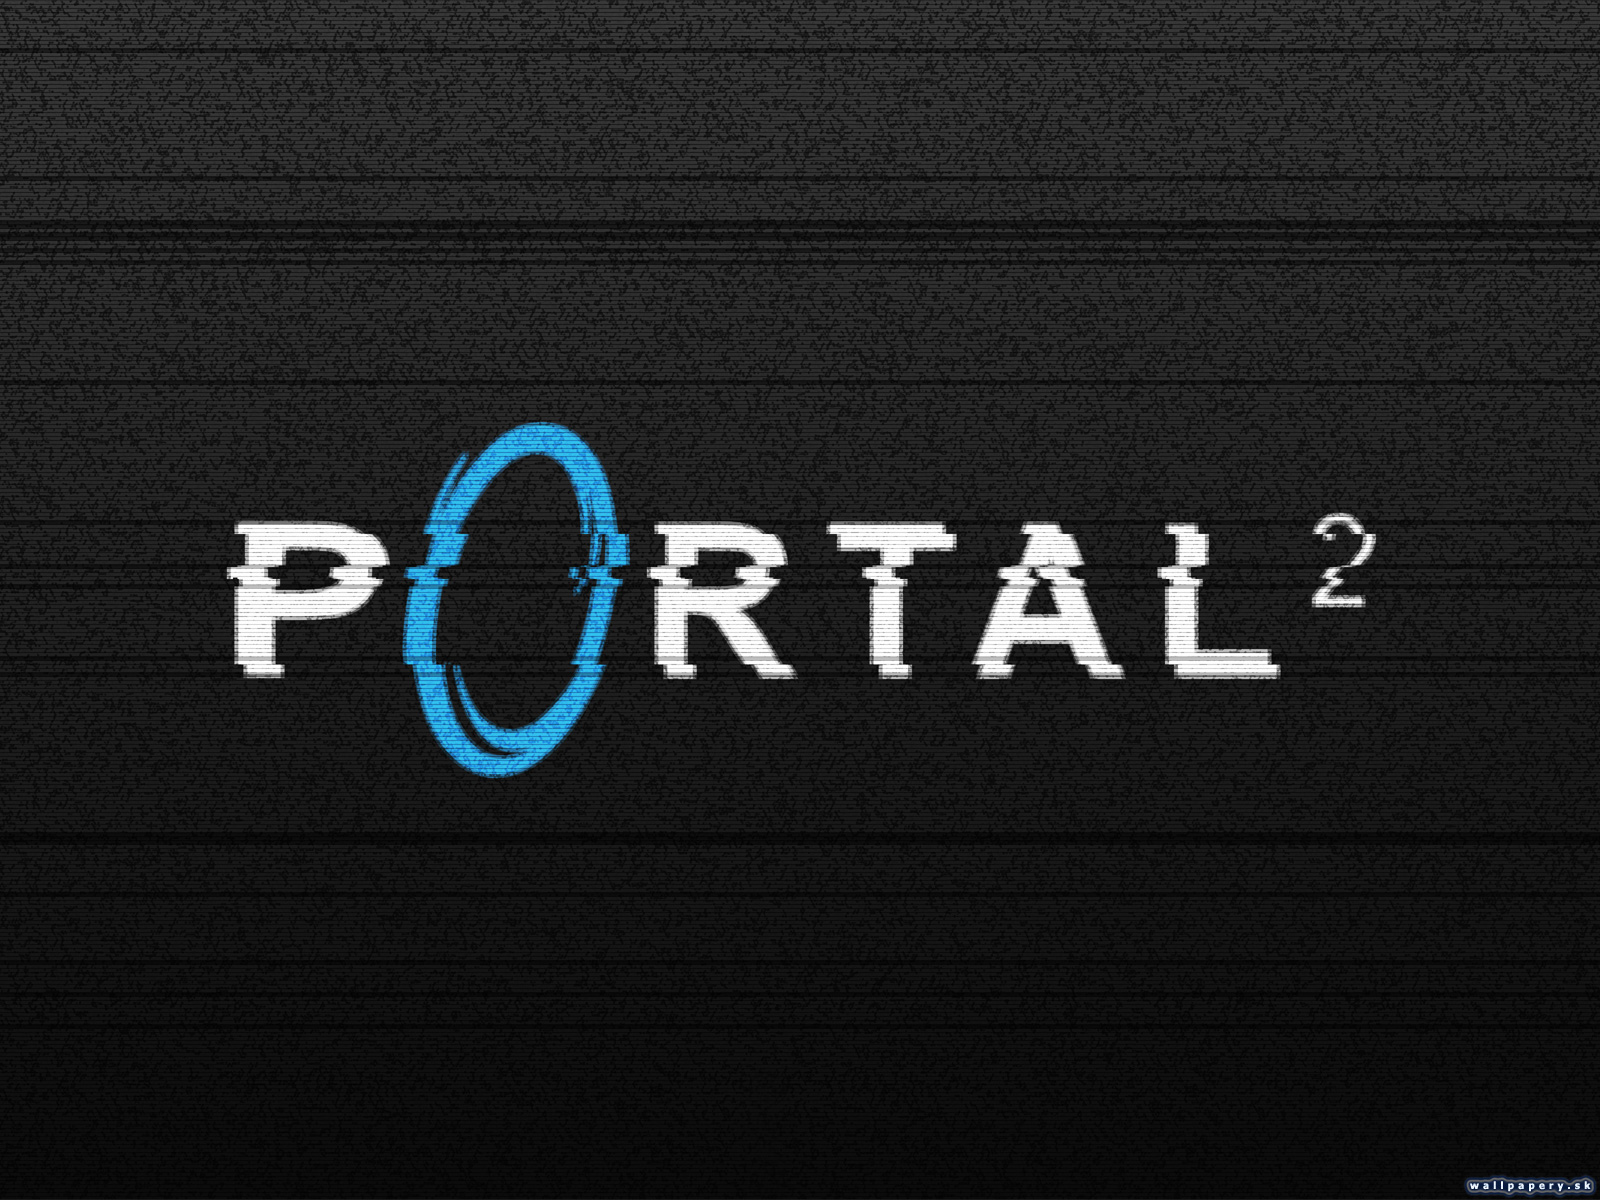 Б г портал. Portal 2 обои. Портал 2 фото на обои. Портал надпись. Портал обои на телефон.